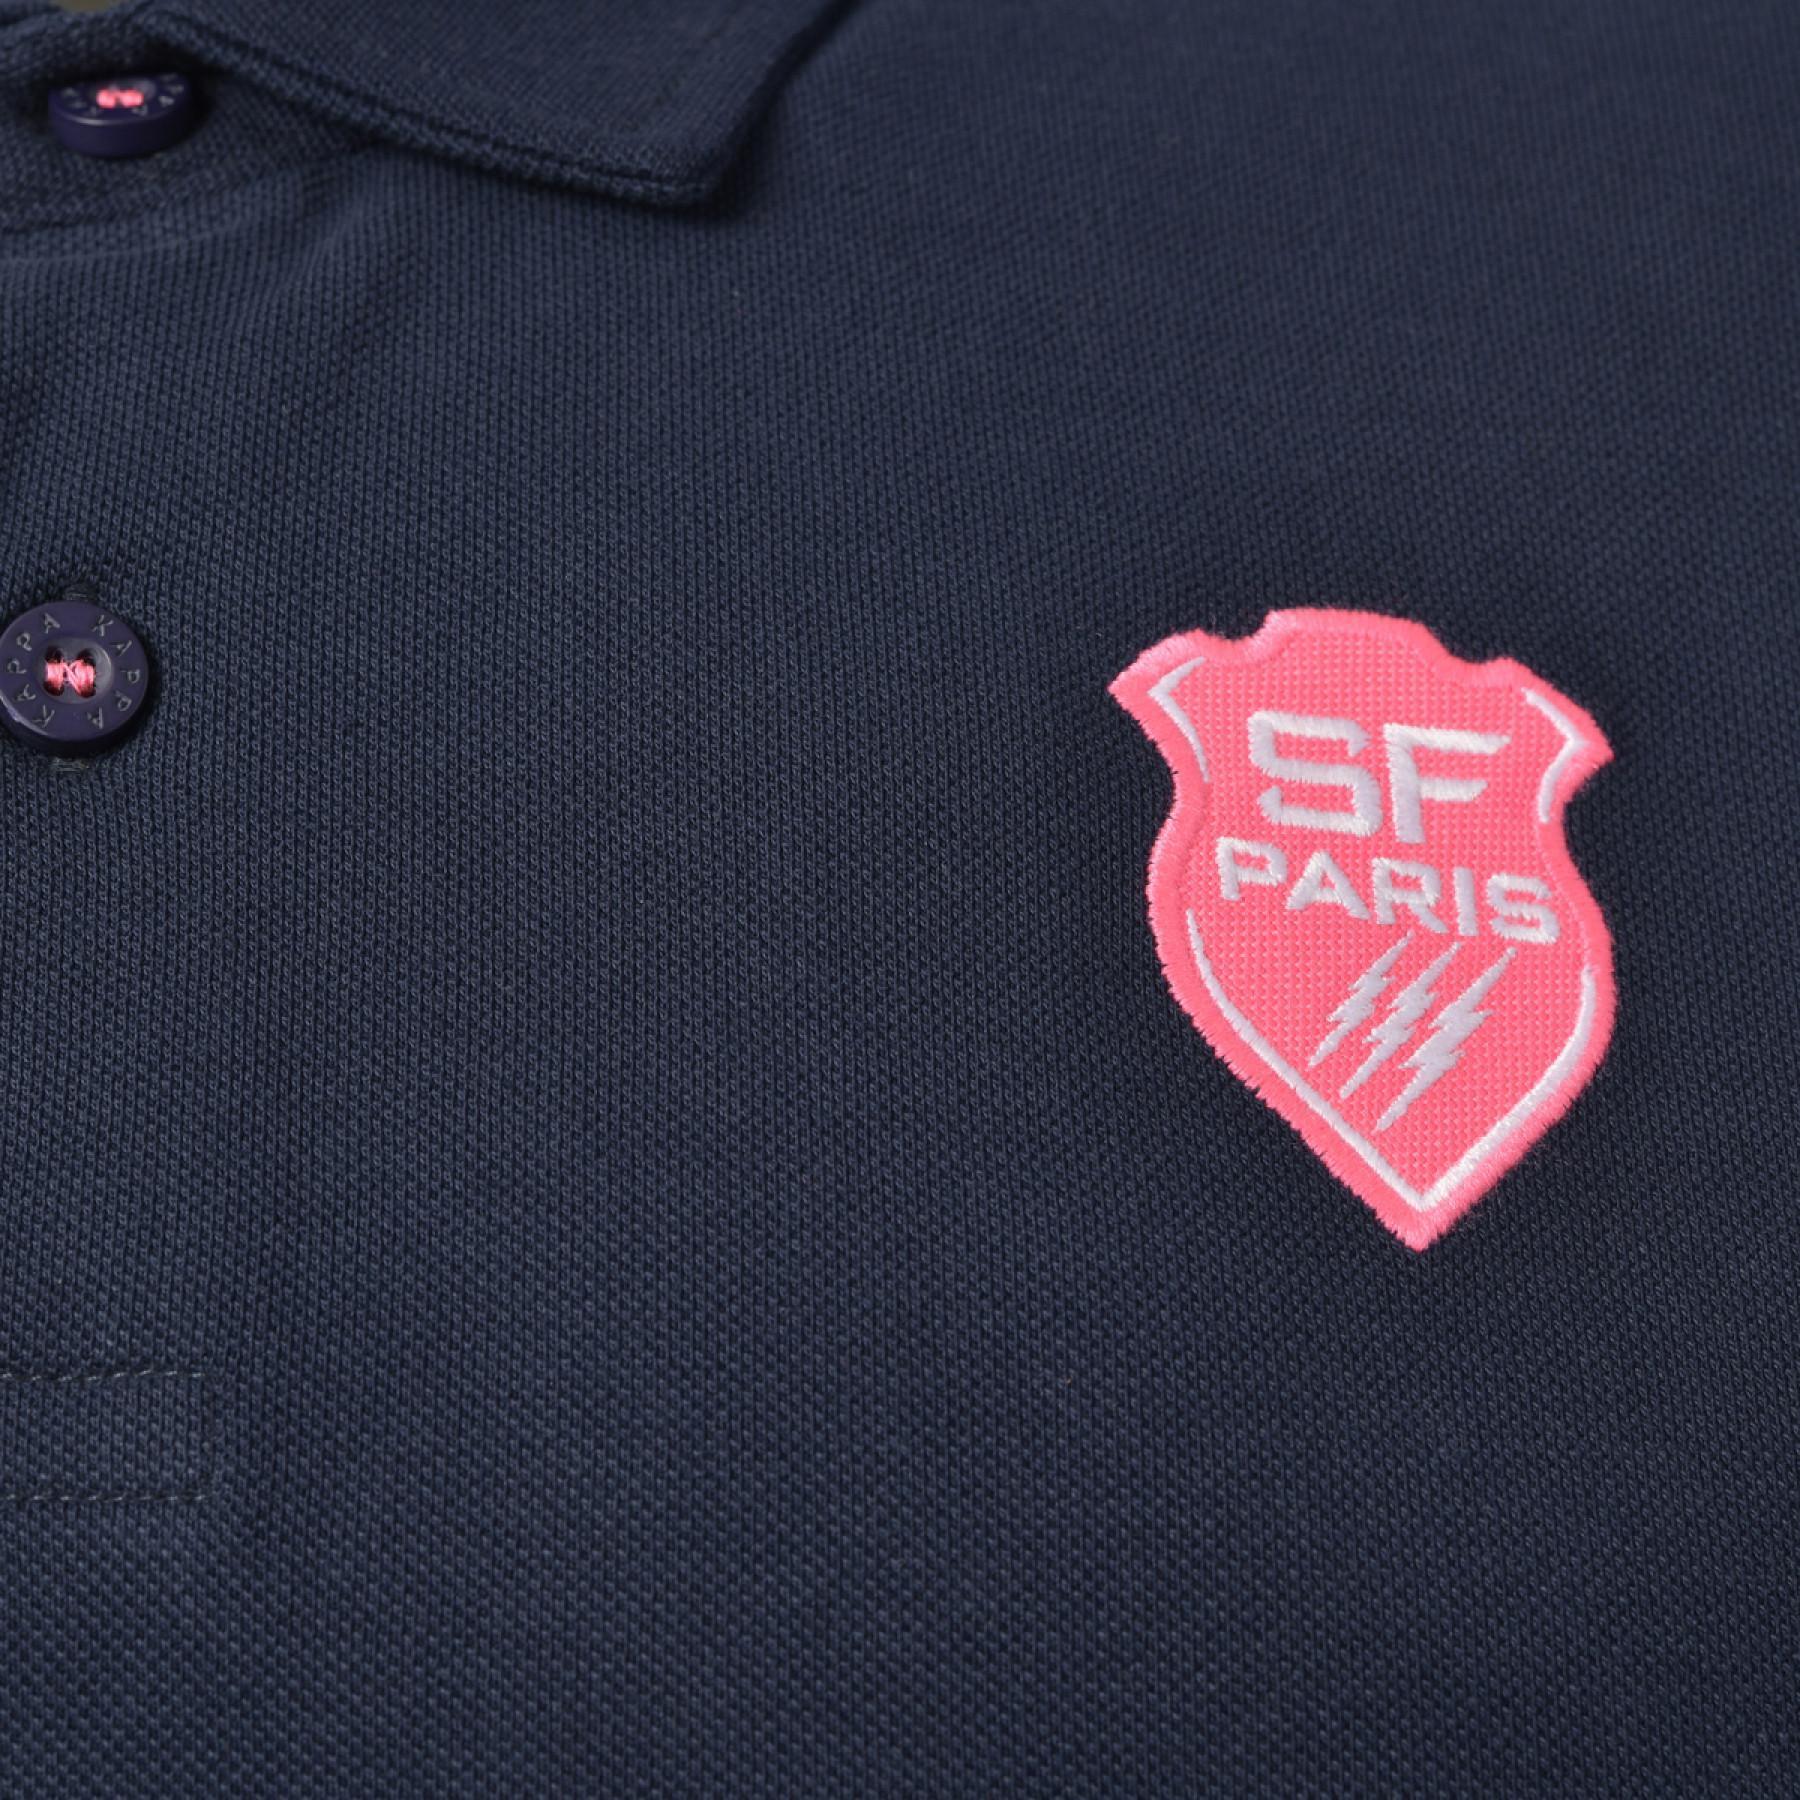 Camisa pólo infantil Stade Français 2020/21 masaccio